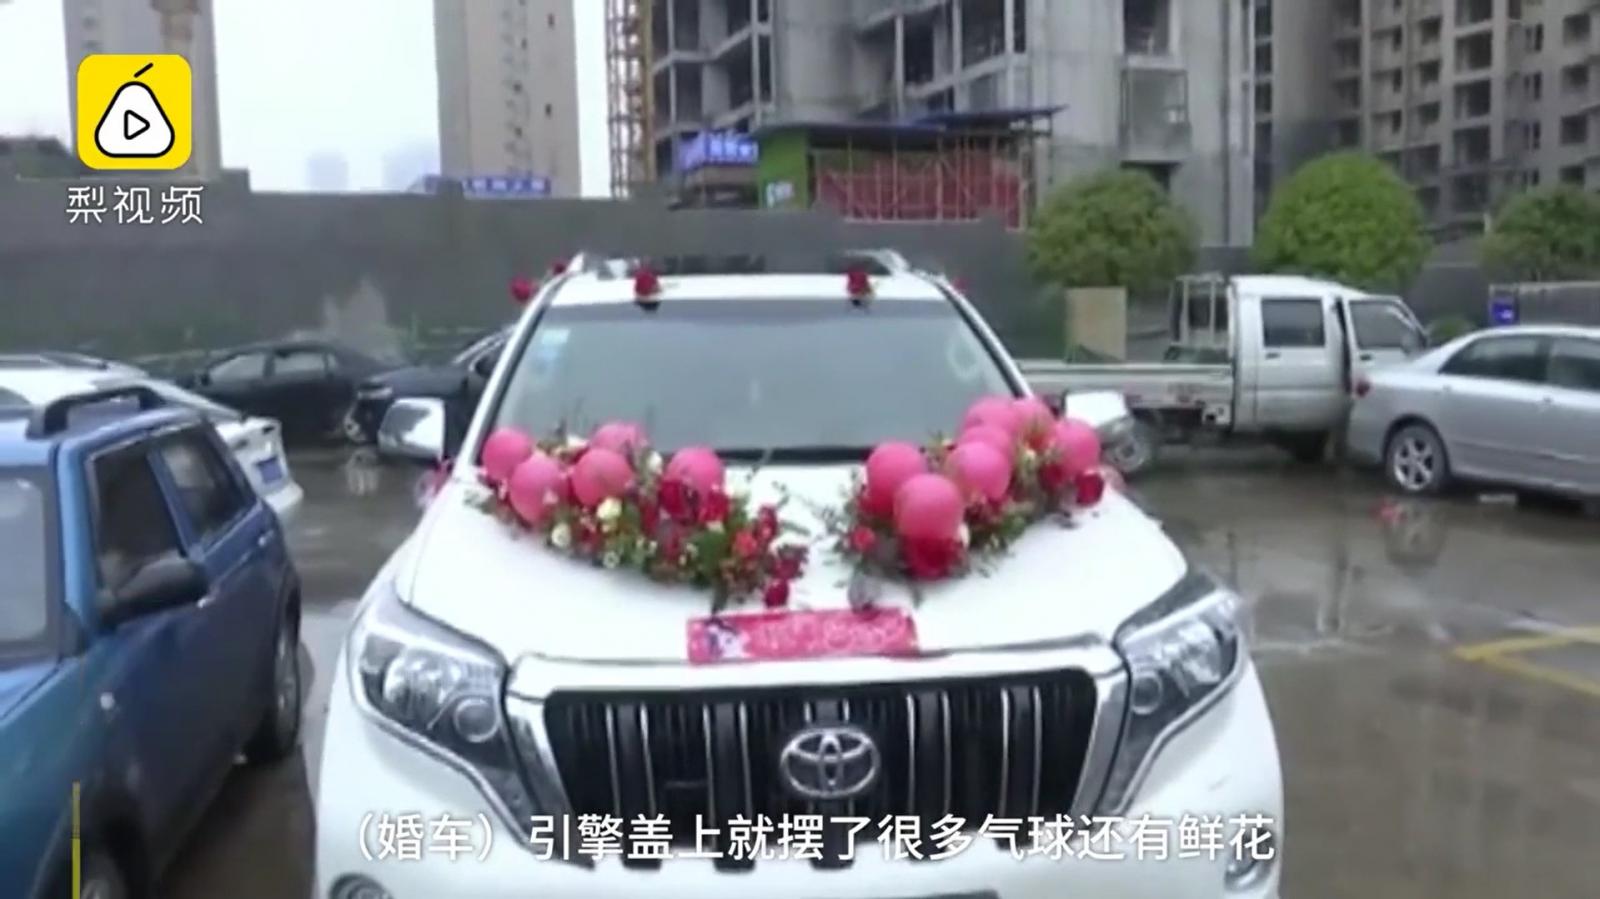 Nguyên nhân của vụ tai nạn là do tài xế lái chiếc Toyota Land Cruiser Prado bị bóng bay và hoa trang trí che khuất tầm nhìn